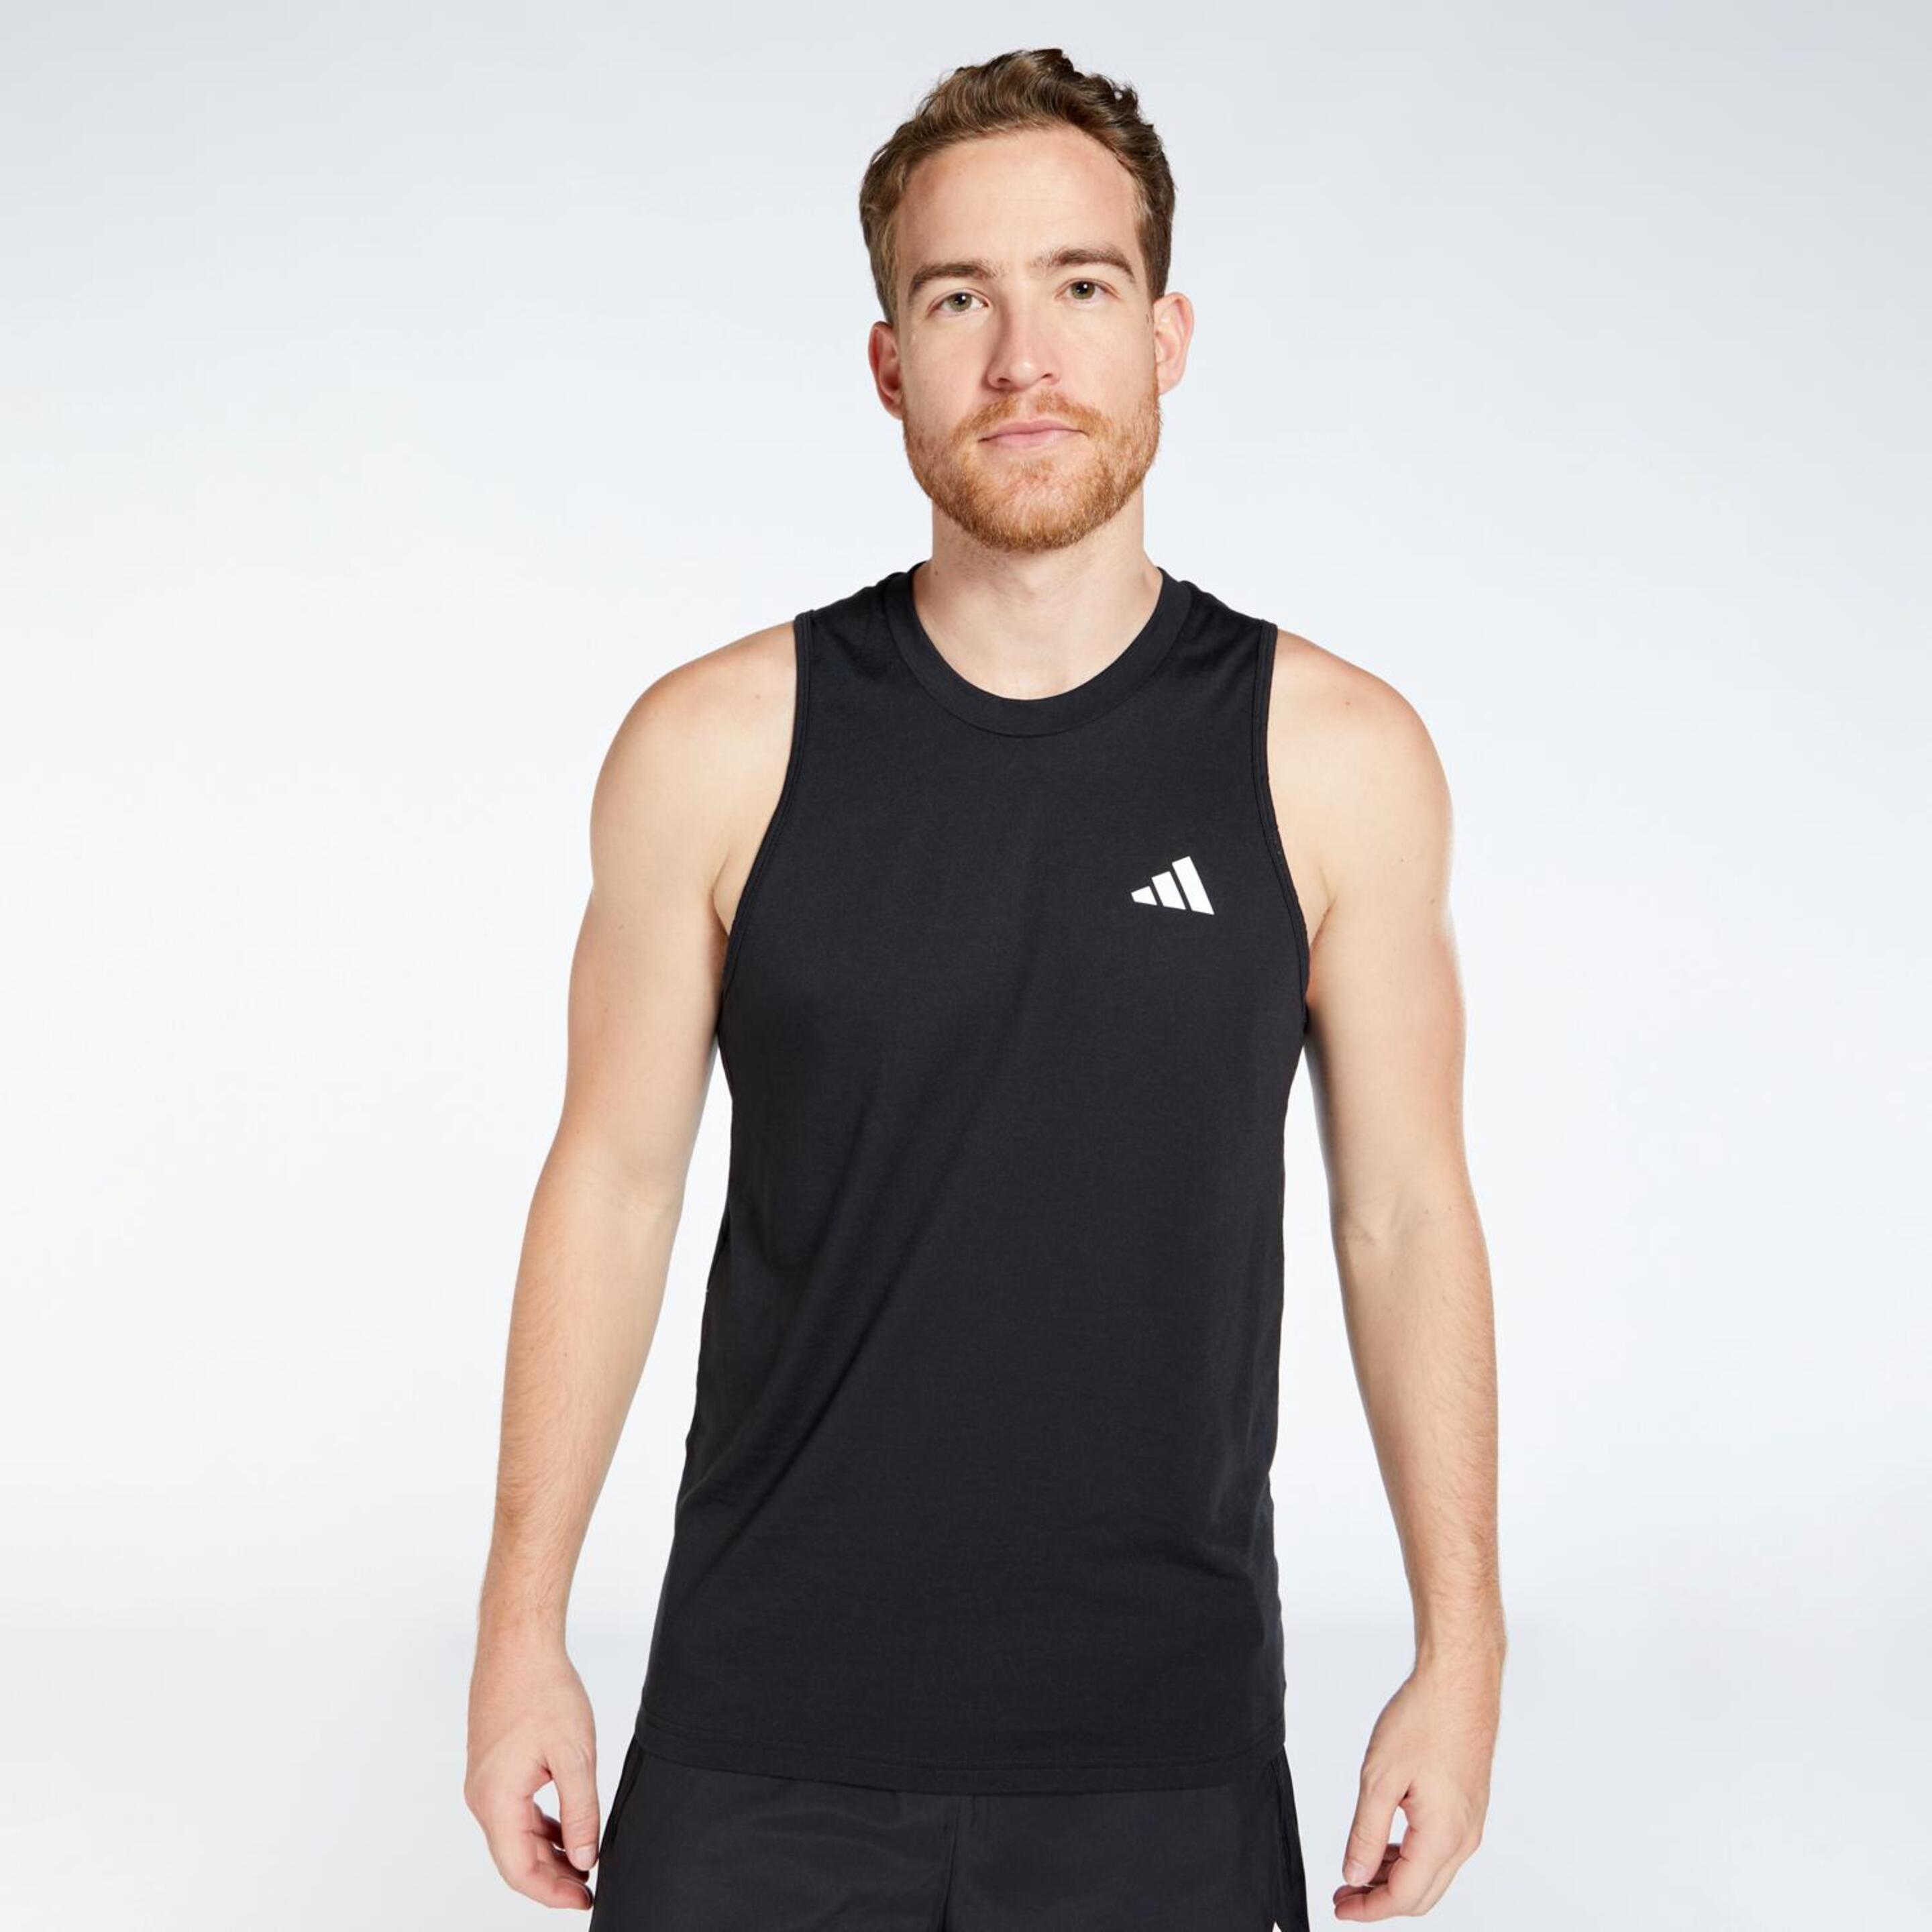 Camiseta Running adidas - negro - Camiseta Tirantes Hombre